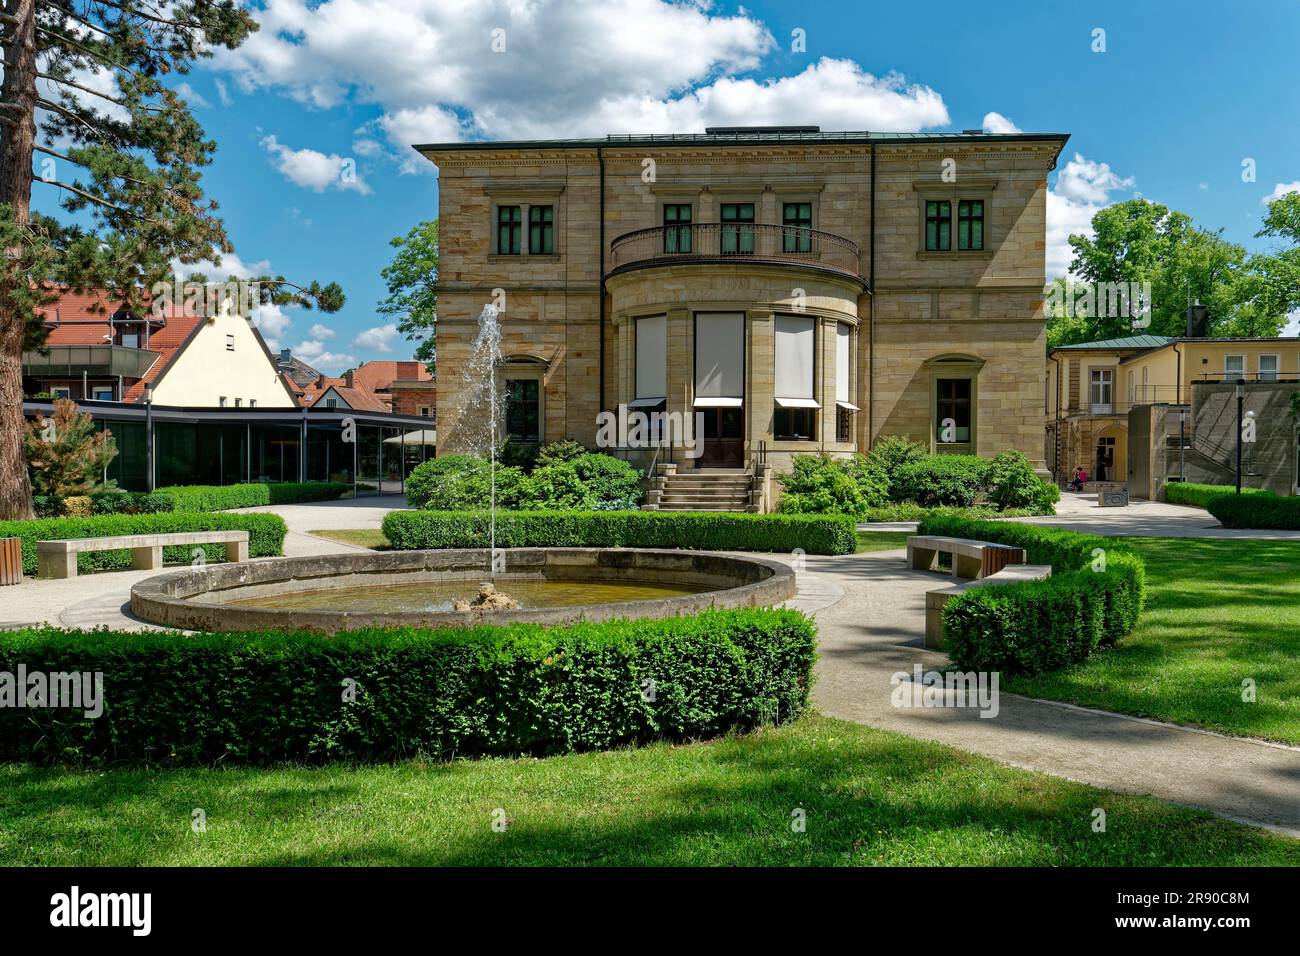 Haus Wahnfried, ehemaliger Wohnsitz von Richard Wagner, heute Richard Wagner Museum, Bayreuth, Bayern, Deutschland Stockfoto